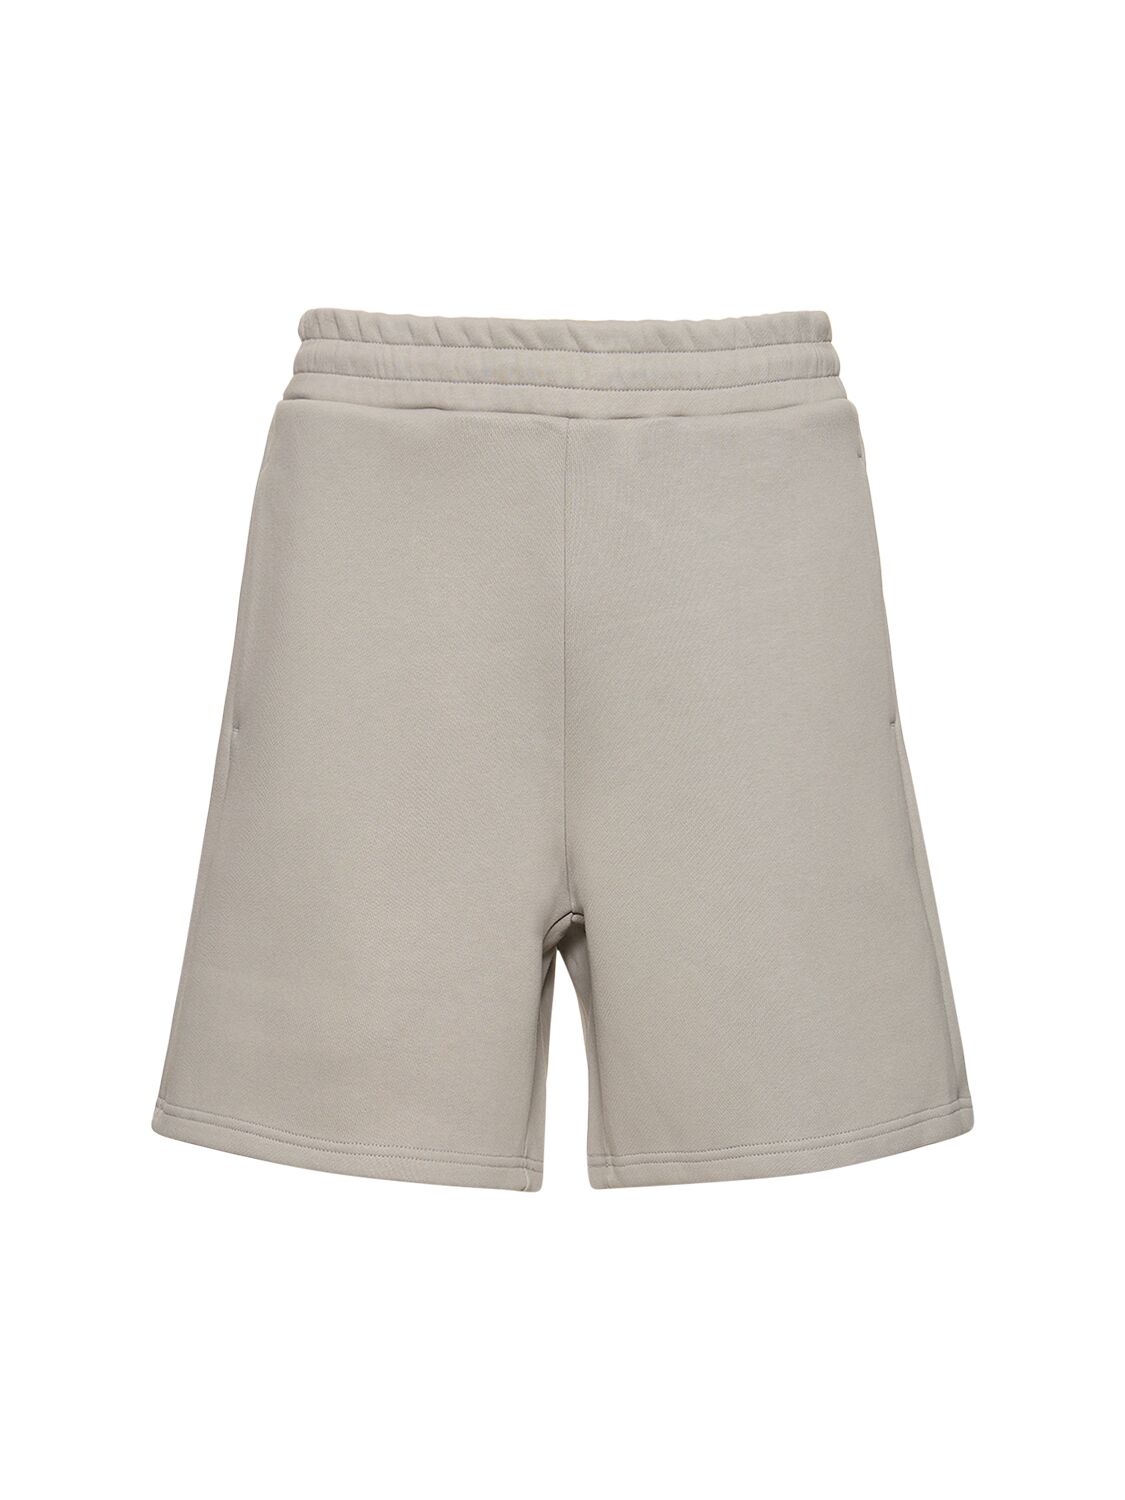 V2 Shorts – MEN > CLOTHING > SHORTS